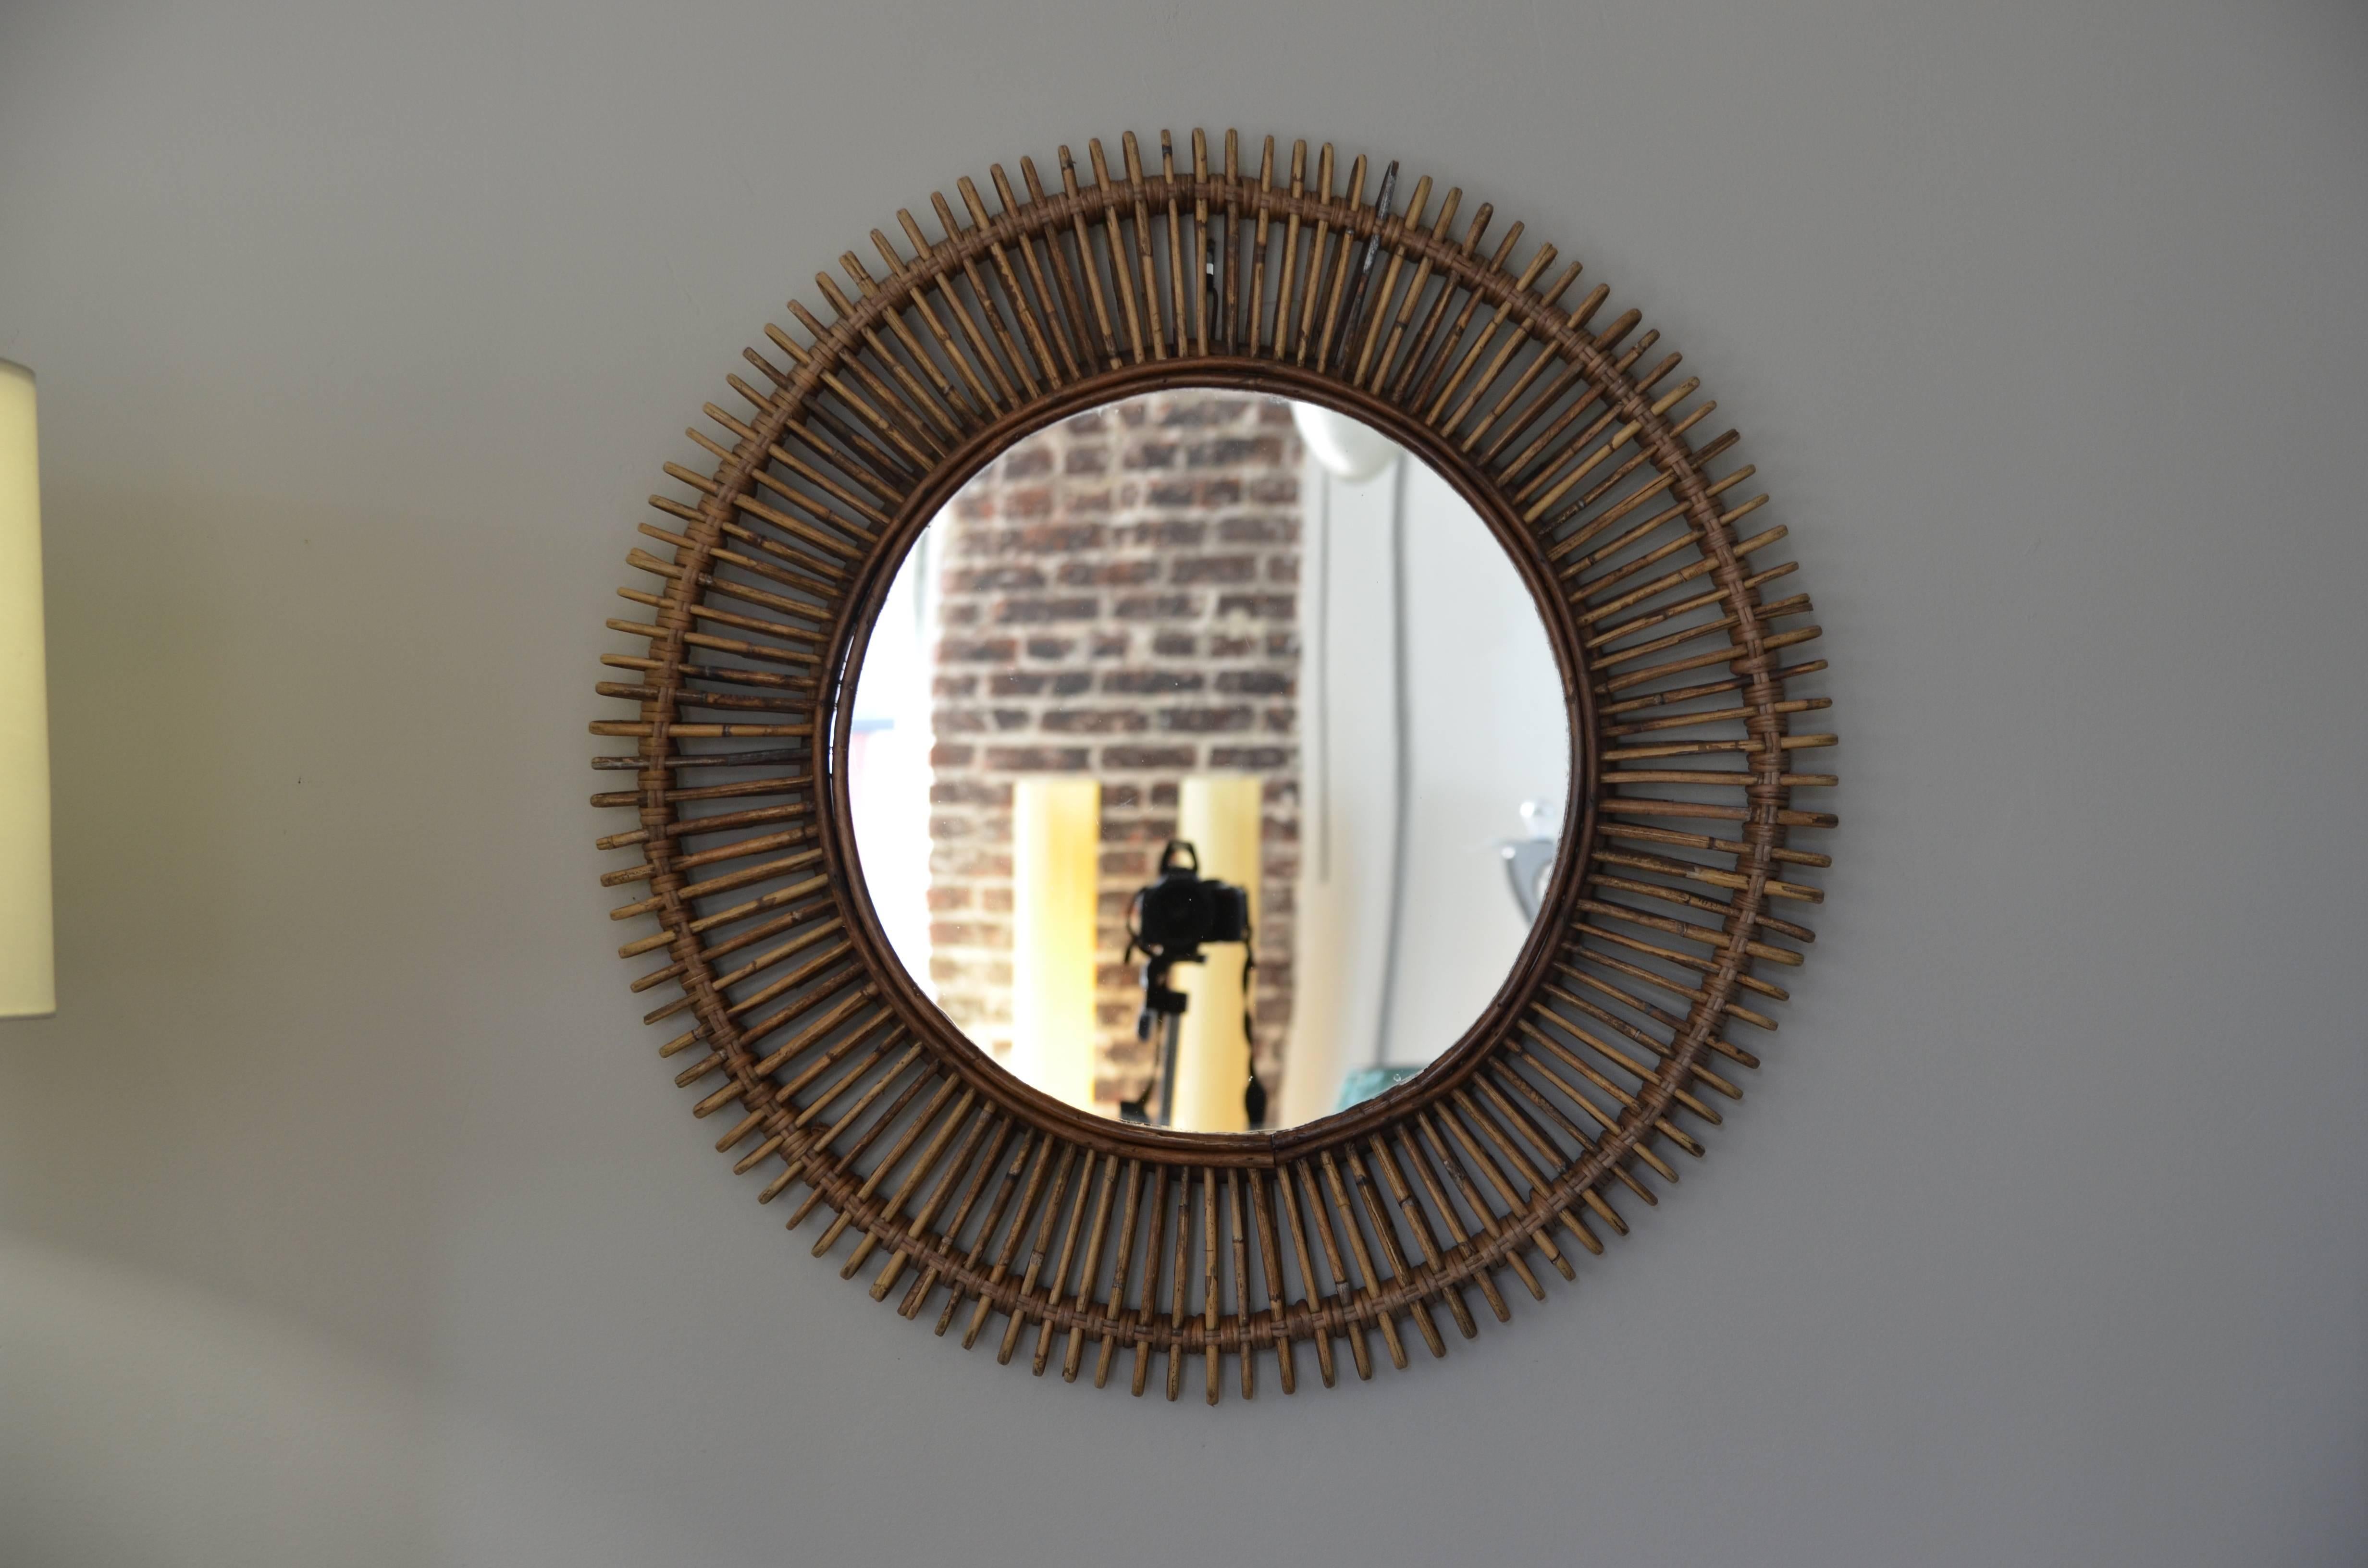 Zwei runde Rattan-Spiegel 'Oculus' von Design Frères. Flacher Spiegel in einem filigranen Rattanrahmen.